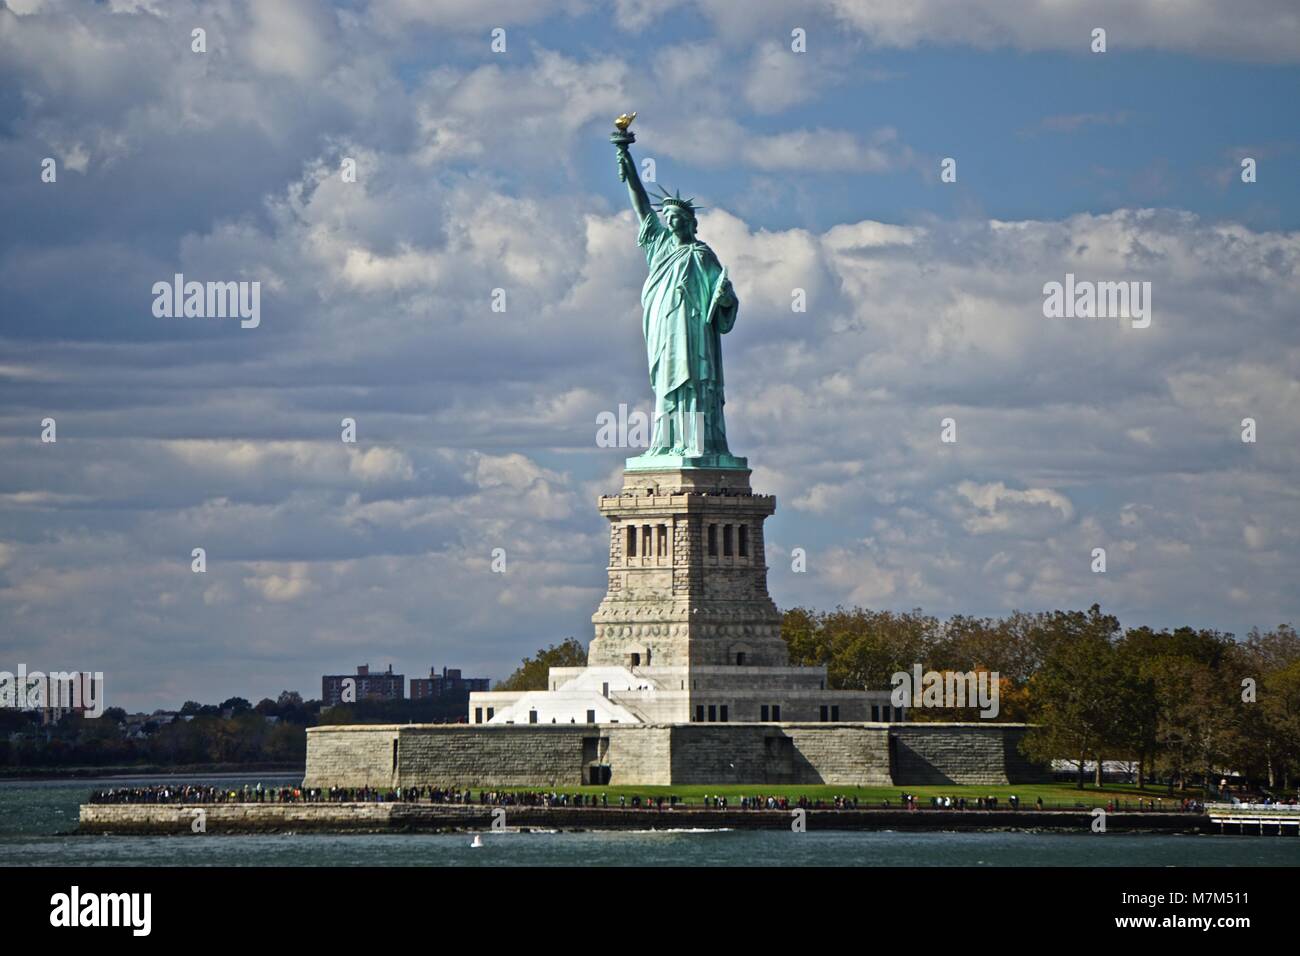 Đừng bỏ lỡ cơ hội được chiêm ngưỡng tượng Nữ thần Tự do - biểu tượng nổi tiếng của Hoa Kỳ. Bức ảnh này sẽ mang đến cho bạn đường nét tinh tế của tượng Nữ thần Tự do, từ khuôn mặt đến chi tiết nhỏ nhất trên bảo tàng.